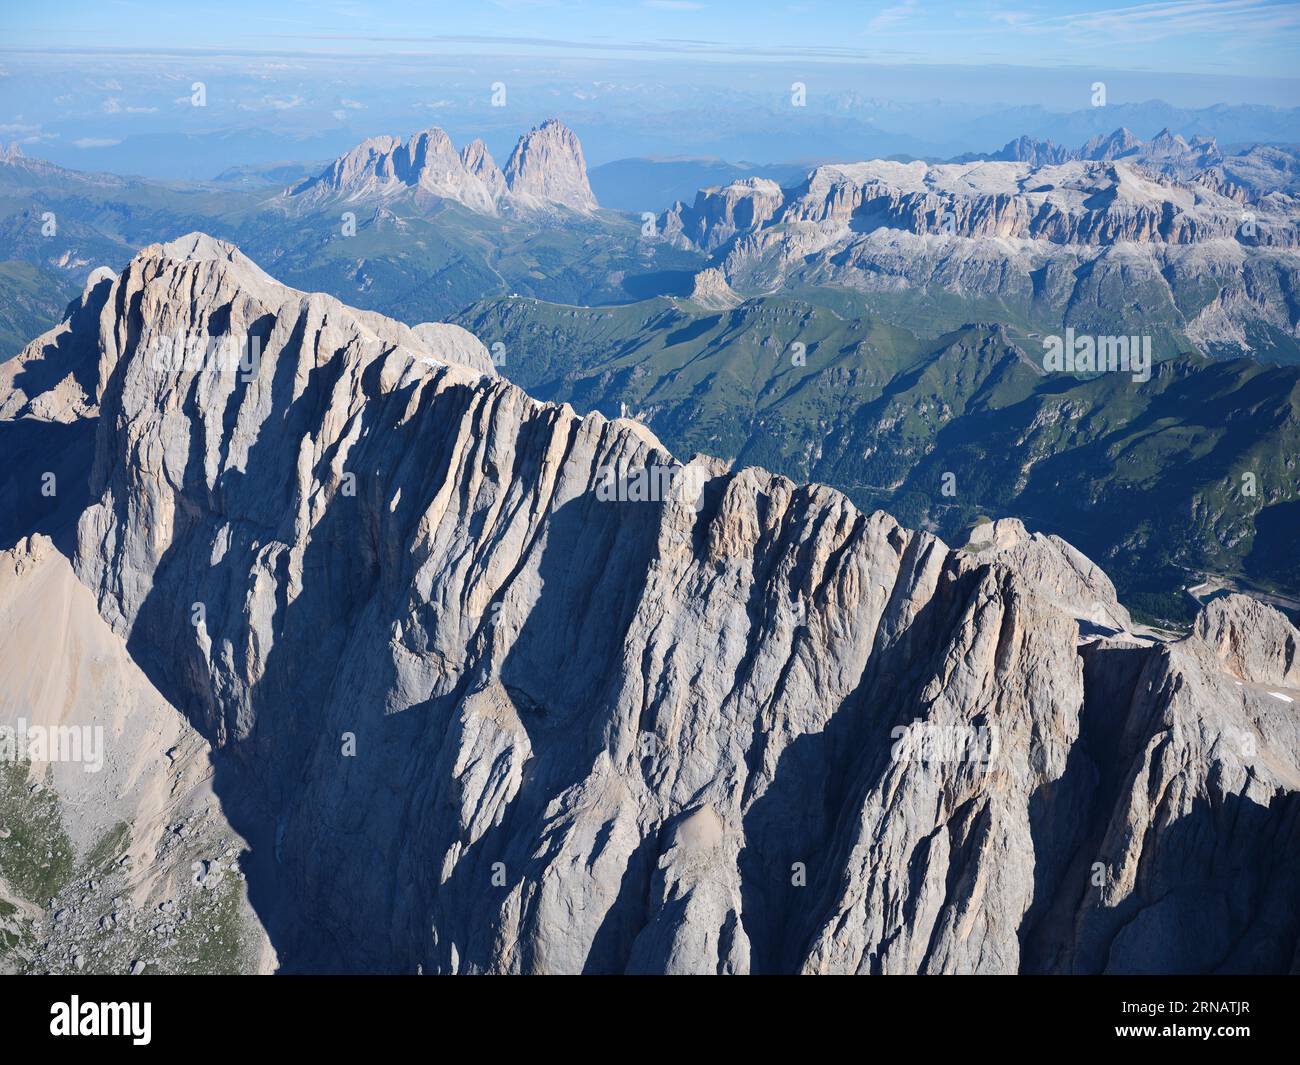 VUE AÉRIENNE. Côté sud de la Marmolada (3343m) avec, au loin, le Groupe de Sassolungo (à gauche) et le Groupe de Sella (à droite). Dolomites, Italie. Banque D'Images